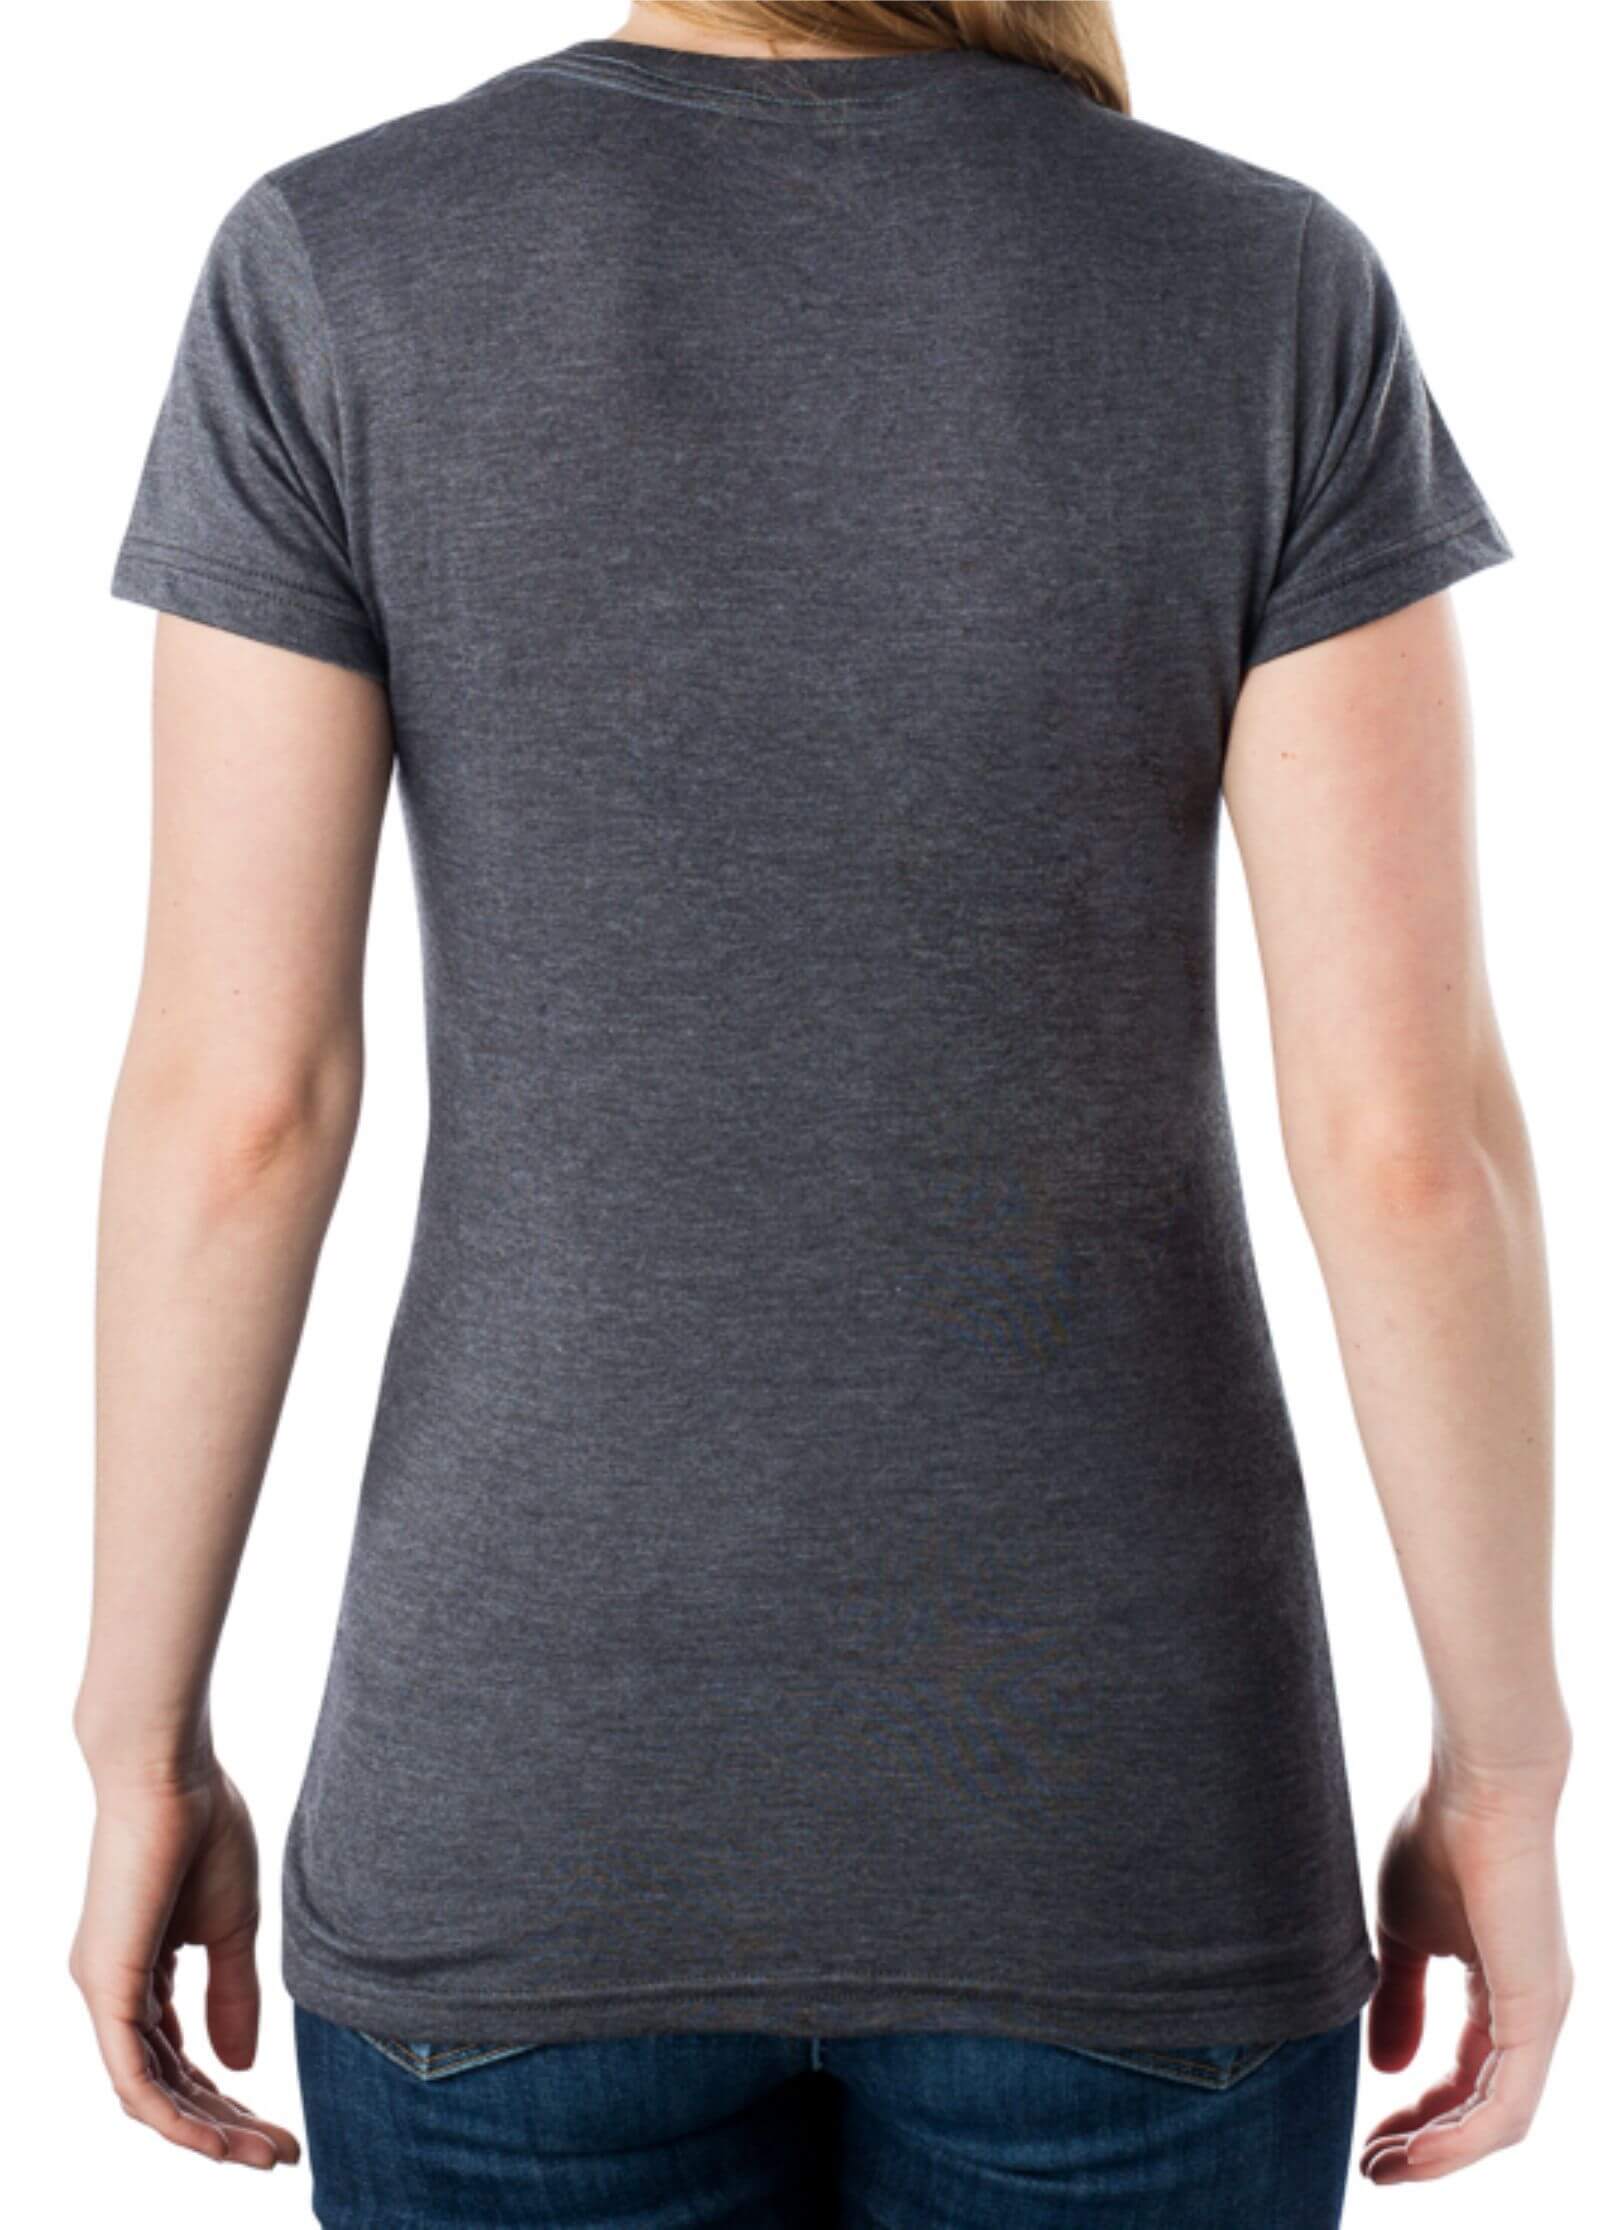 Women's Basic Short Sleeve V-Neck T-Shirt